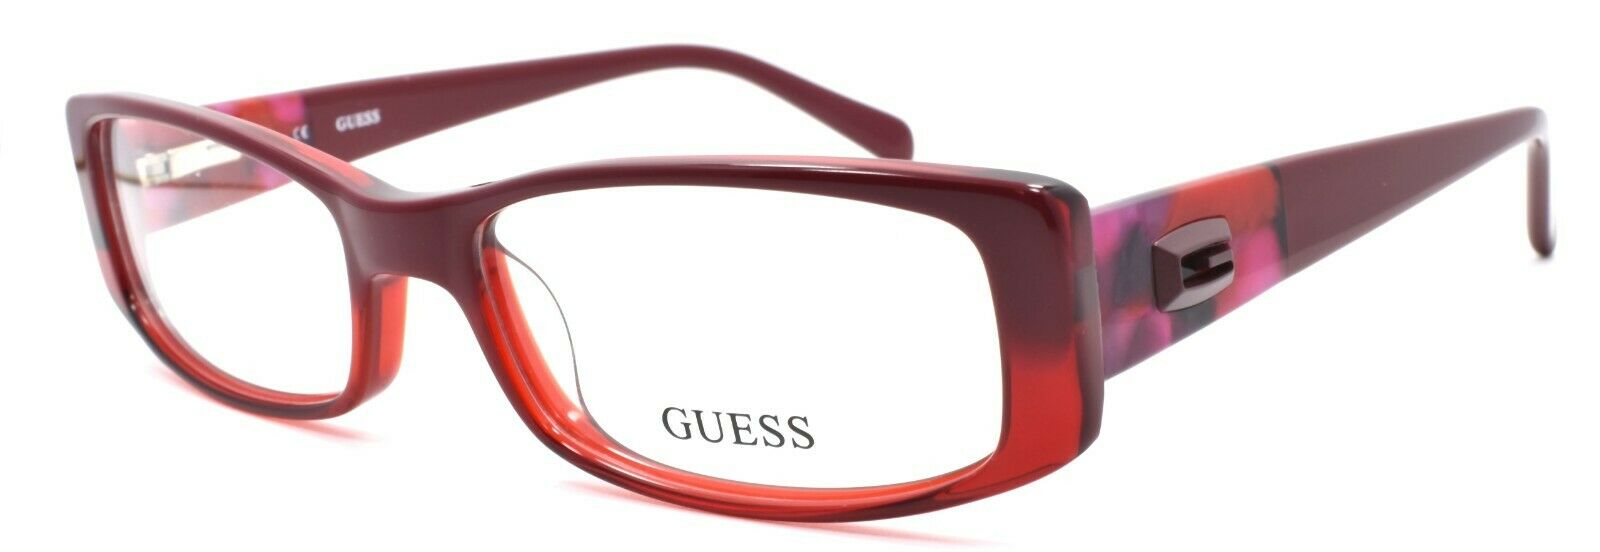 1-GUESS GU2409 RD Women's Eyeglasses Frames 53-16-140 Red + CASE-715583959828-IKSpecs